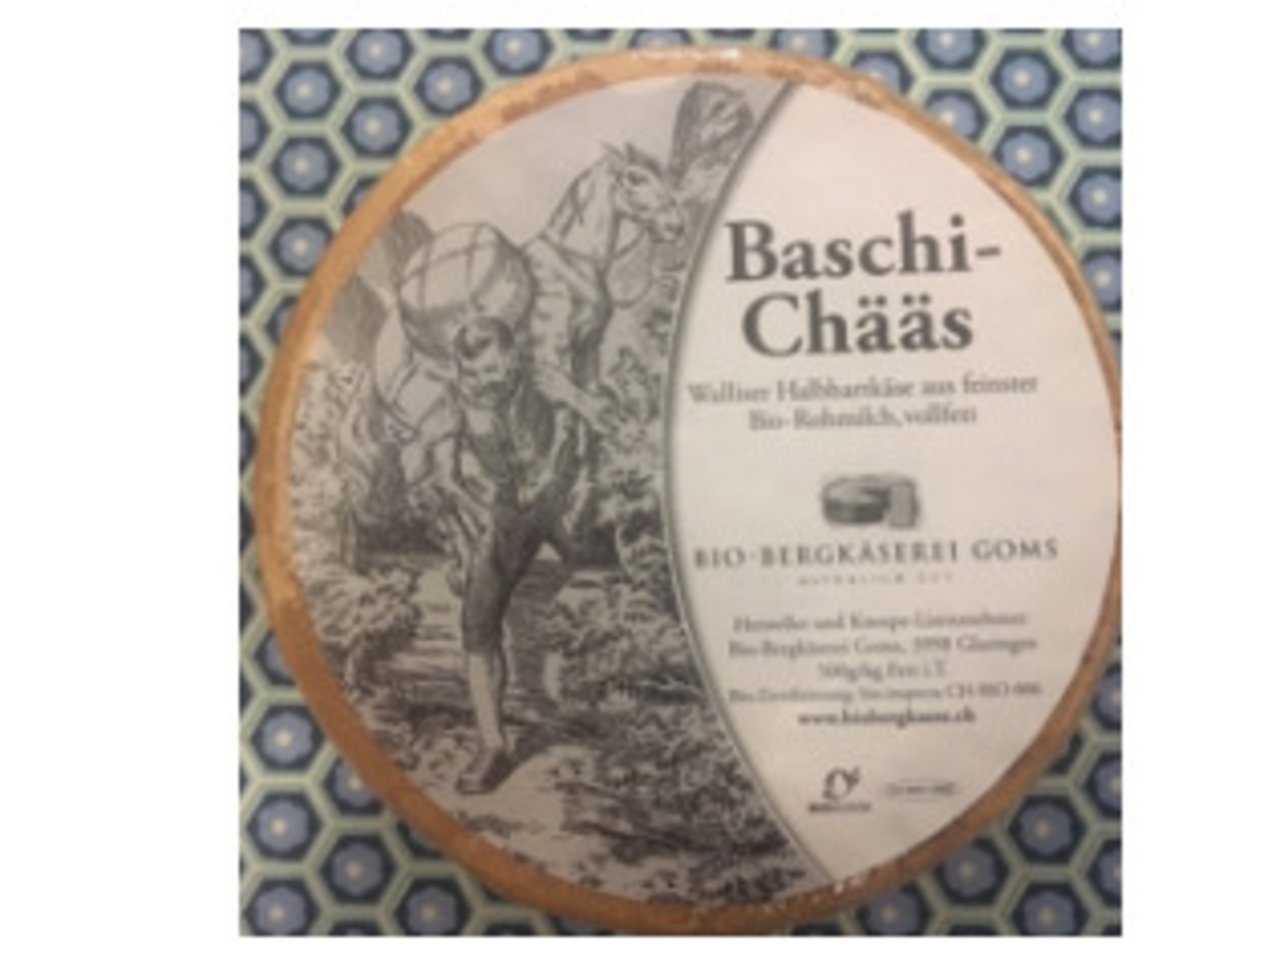 ..der "Baschi-Chäs"...